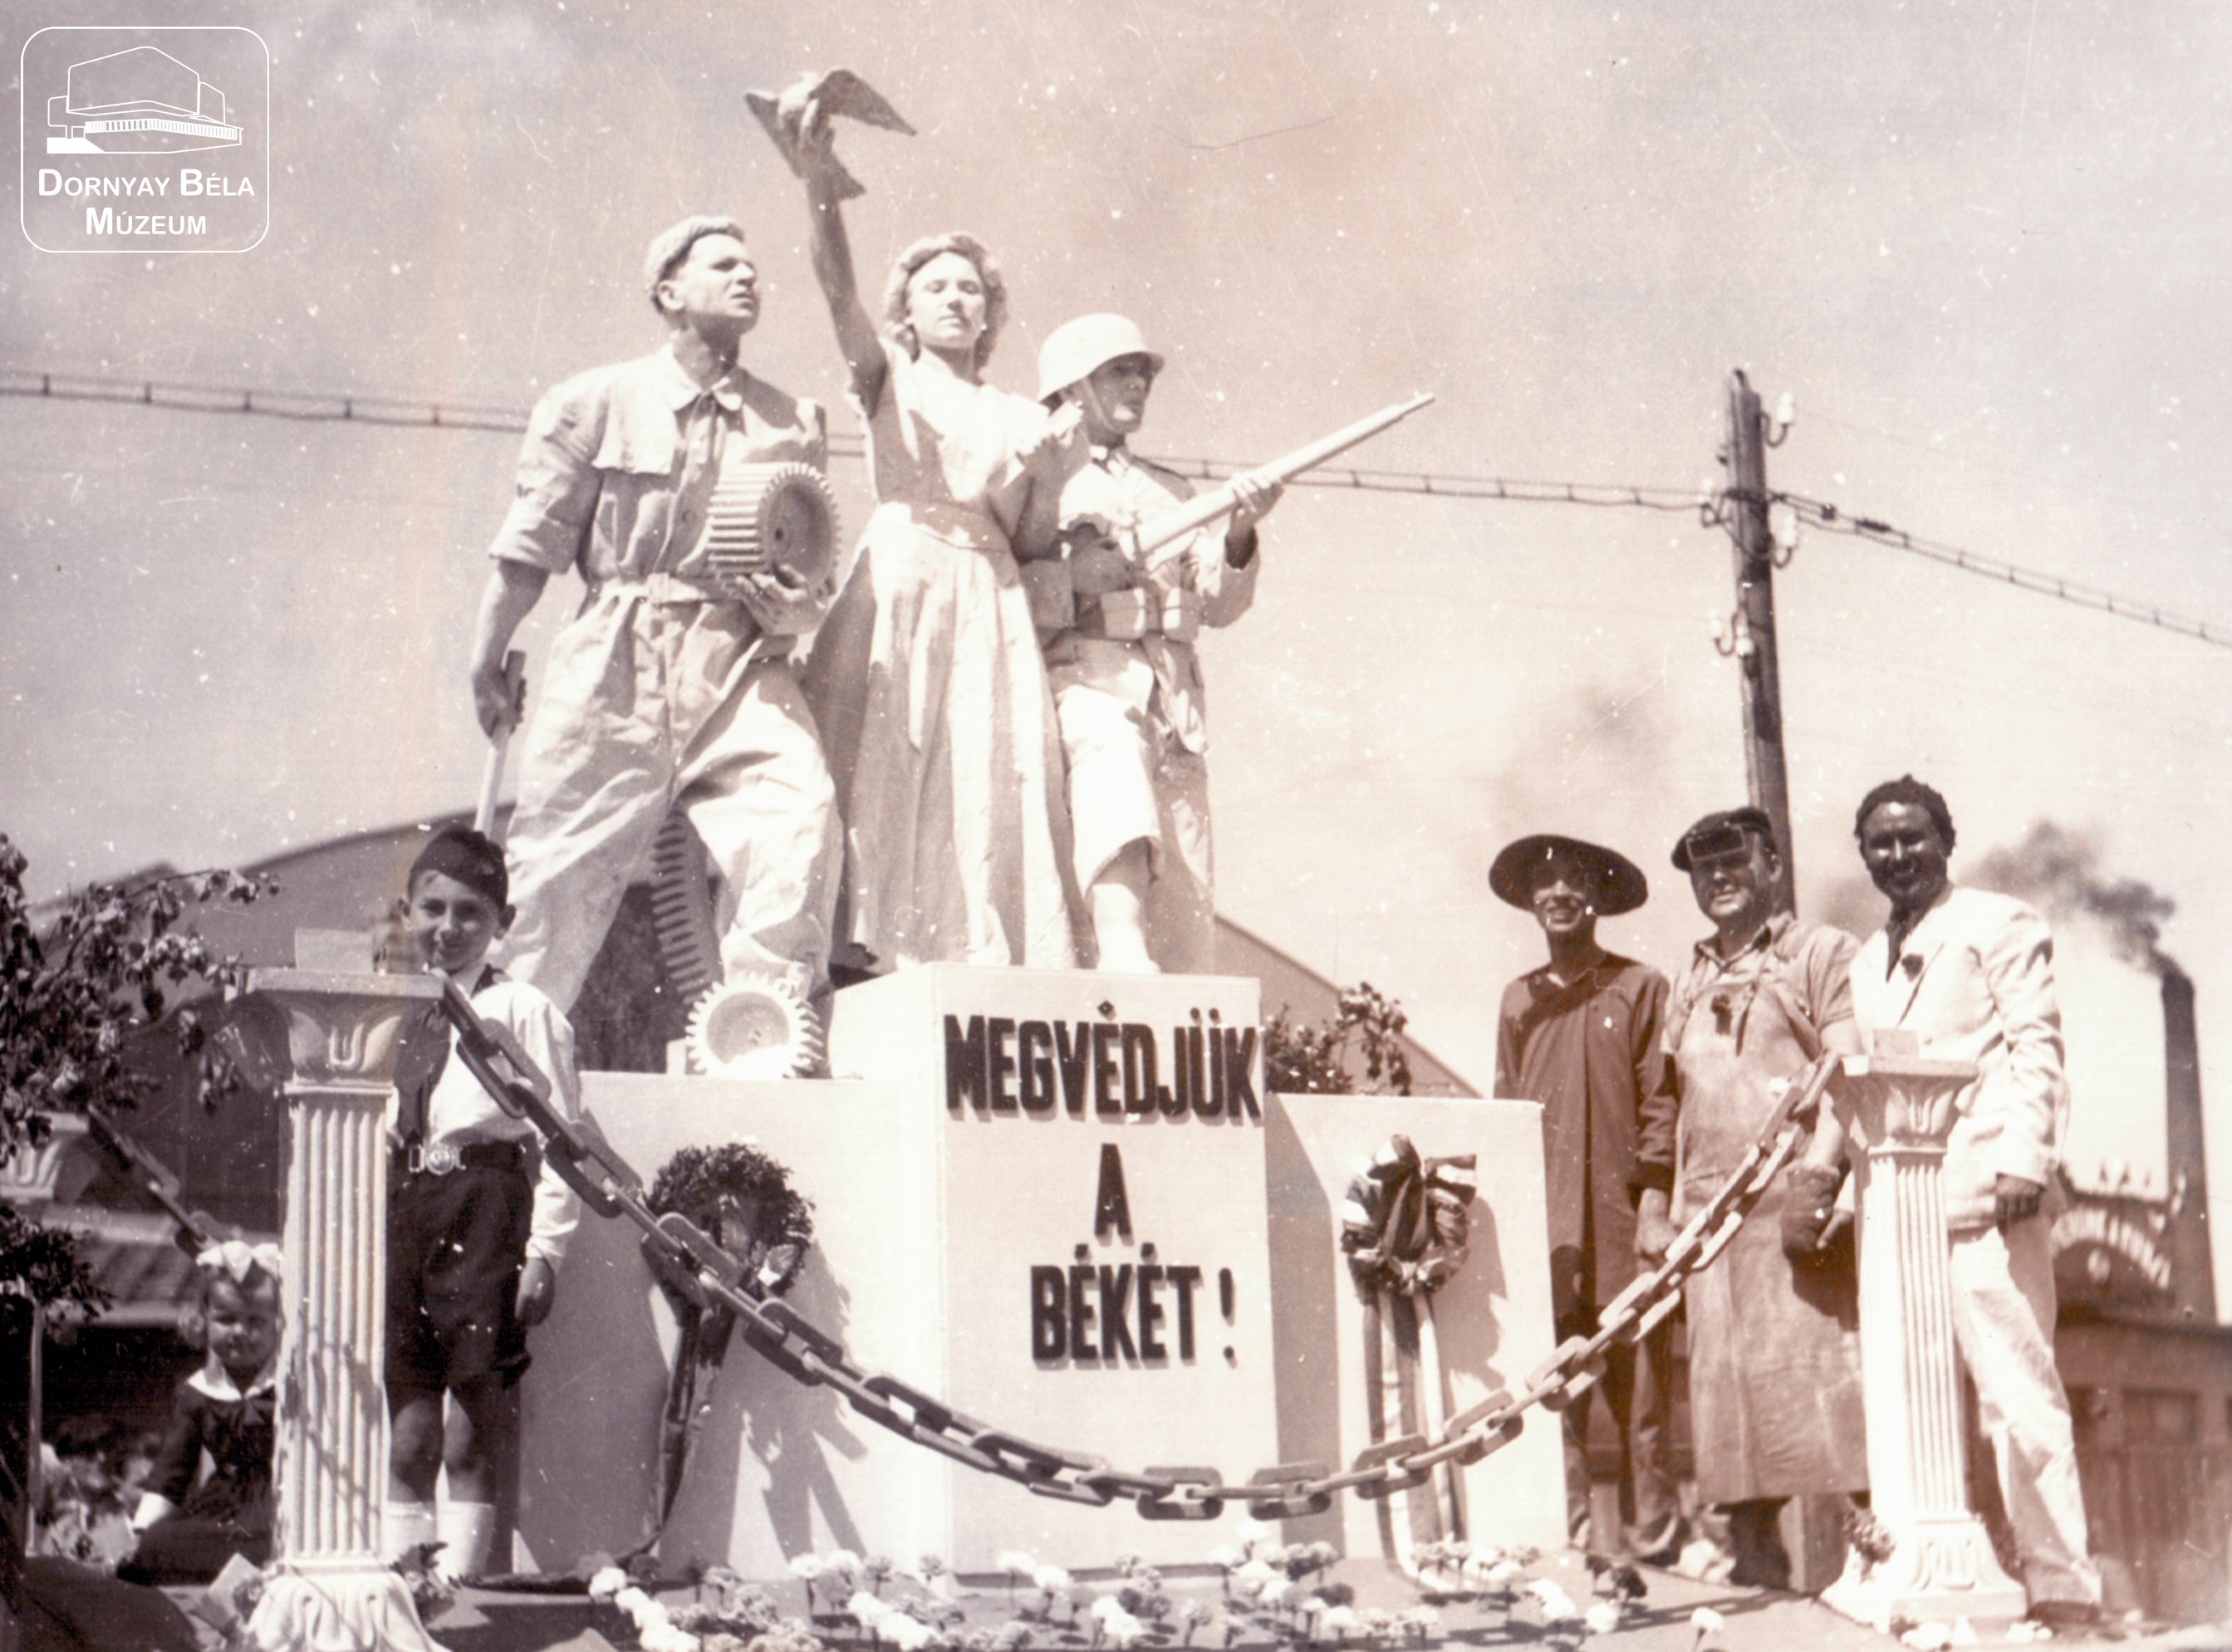 Salgótarján, 1948. május 1. felvonulás részlete, élőképpel. (Dornyay Béla Múzeum, Salgótarján CC BY-NC-SA)